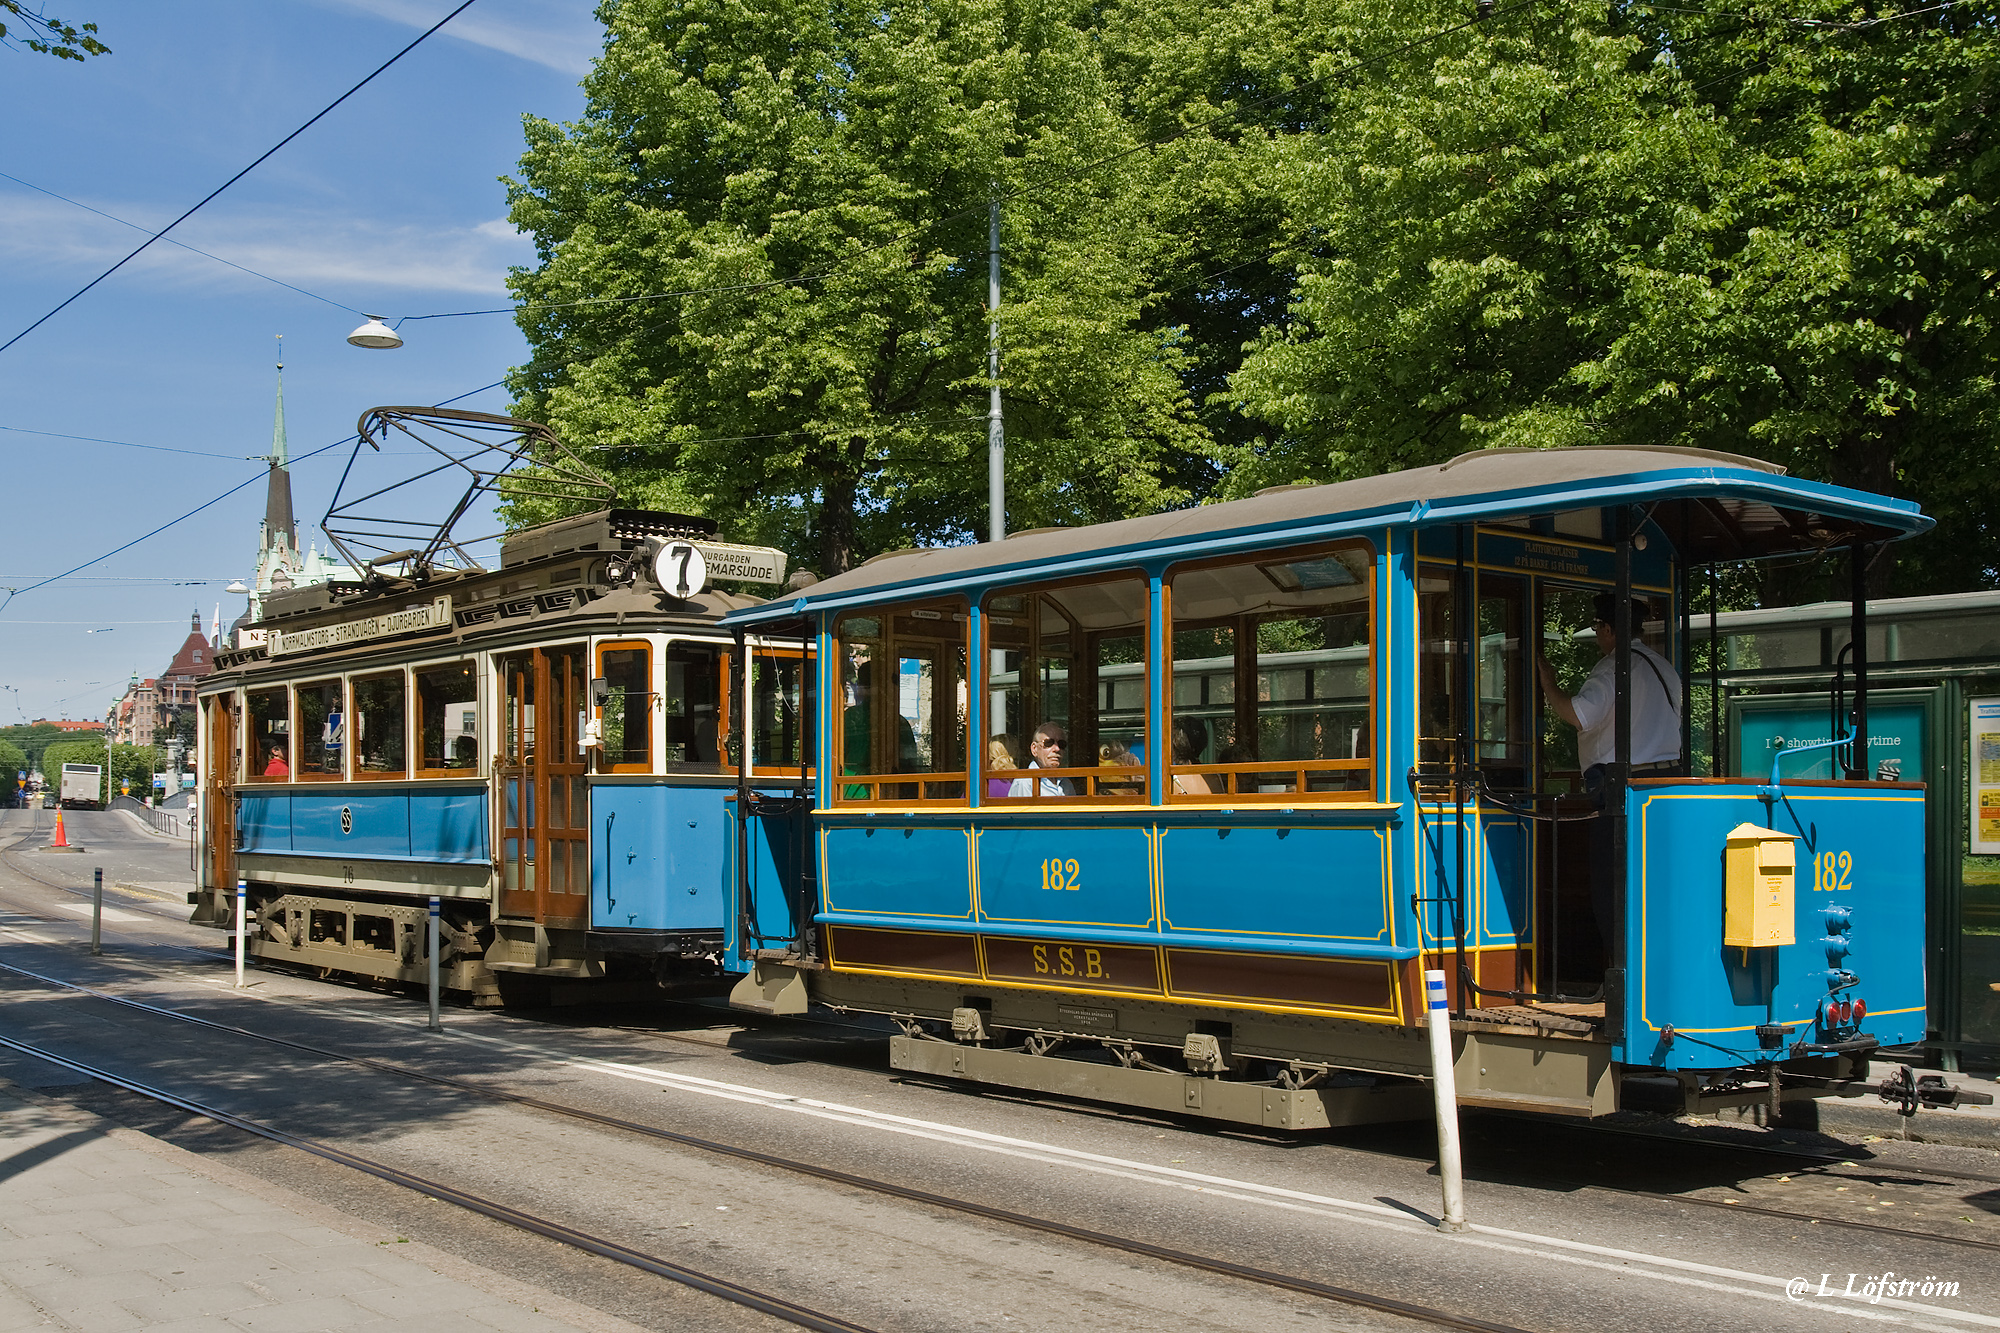 Stockholm-Old tram